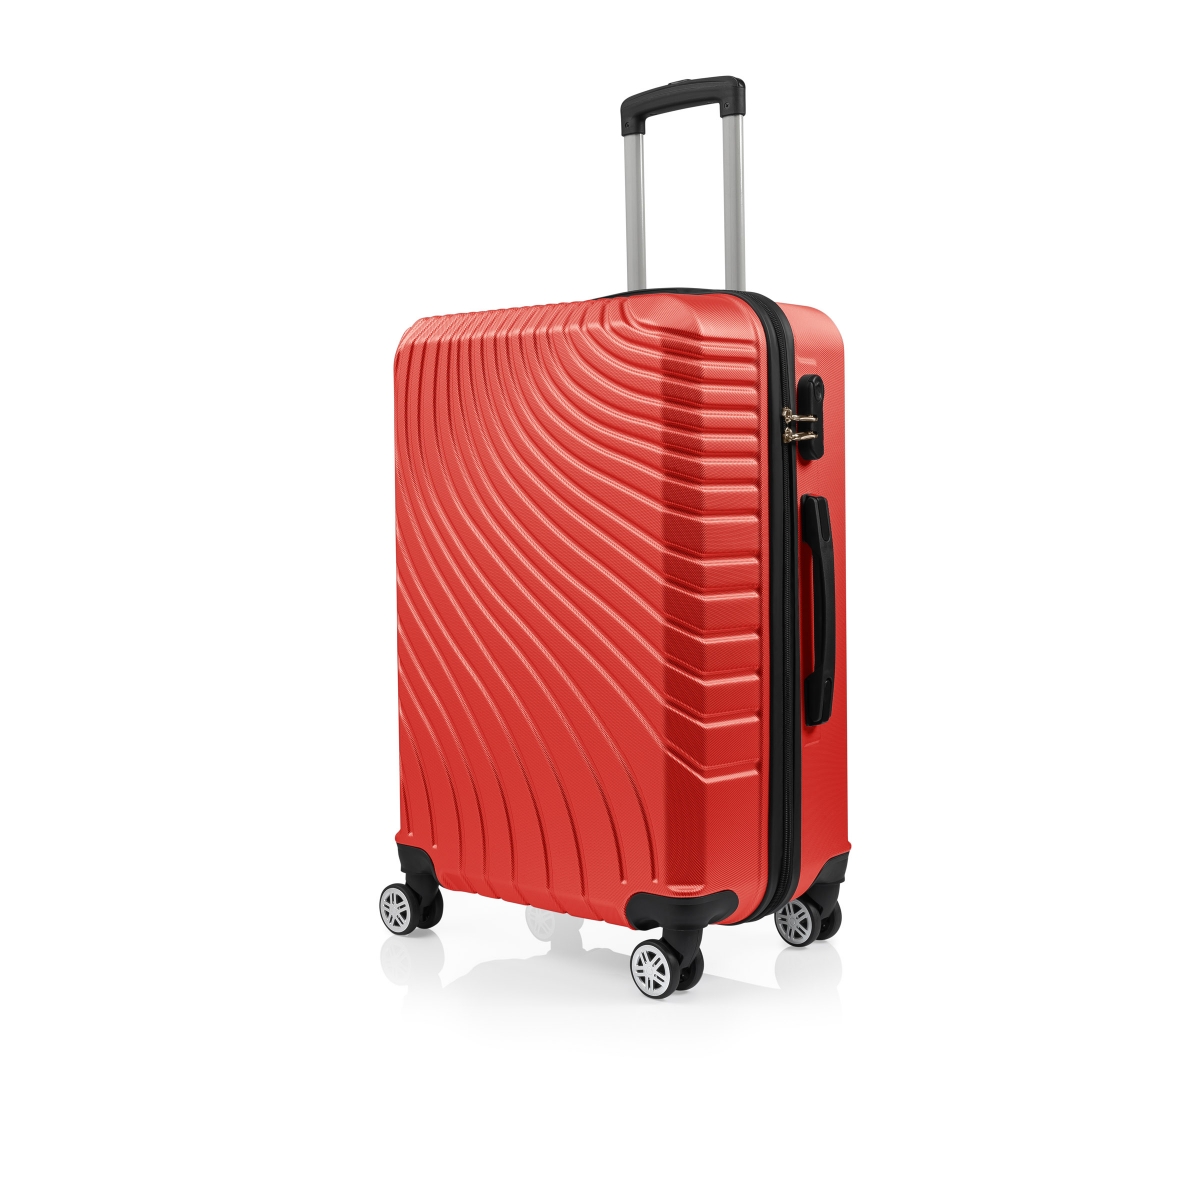 Gedox Abs 3'lü Valiz Seyahat Seti - Model:700.14 Kırmızı